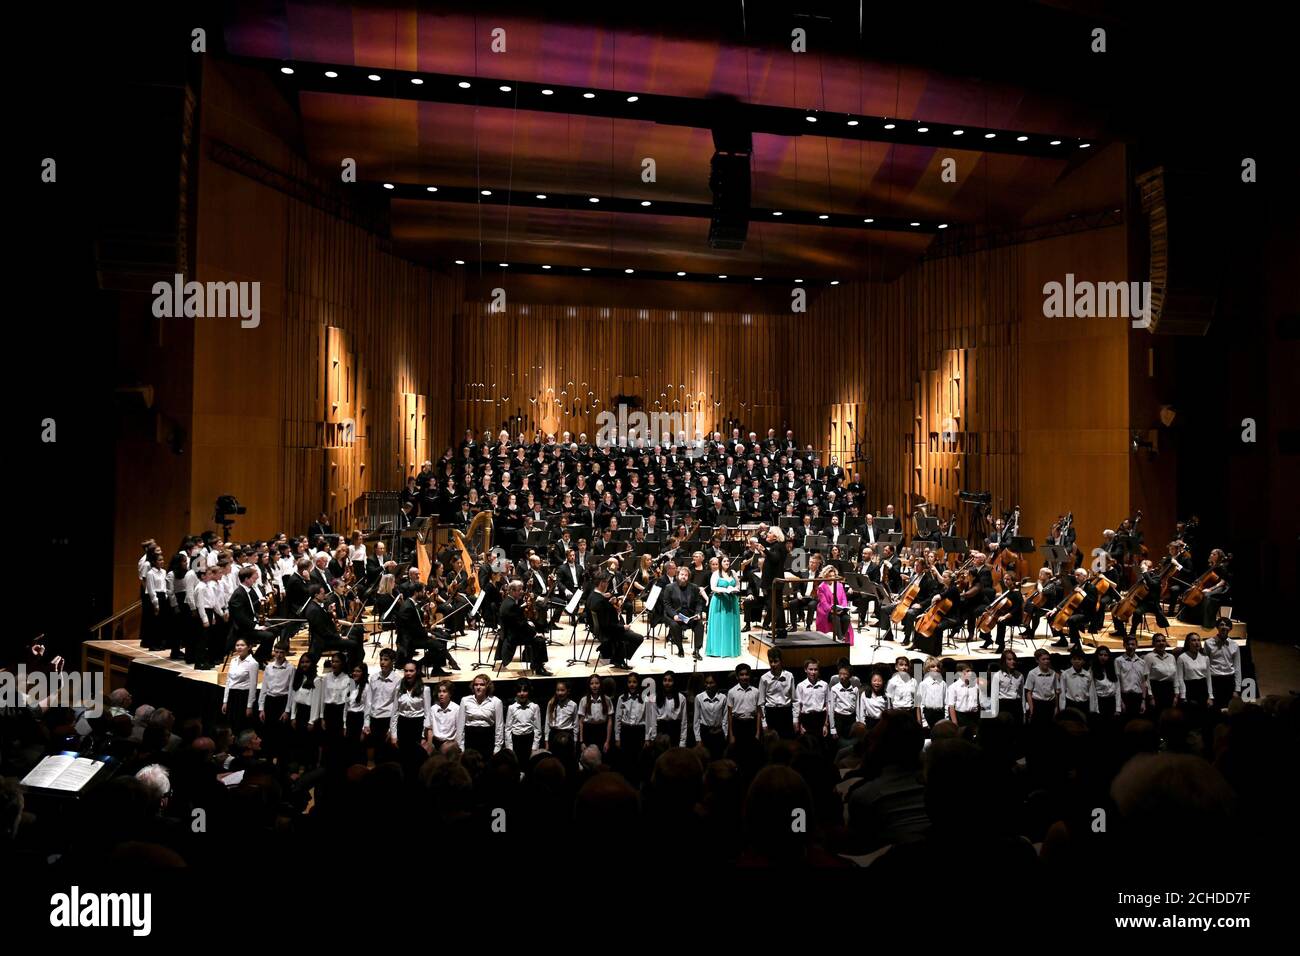 Sir Simon Rattle dirige la Orquesta Sinfónica de Londres en el Barbican Hall de Londres, abriendo la temporada 2018/19 de la orquesta. Foto de stock